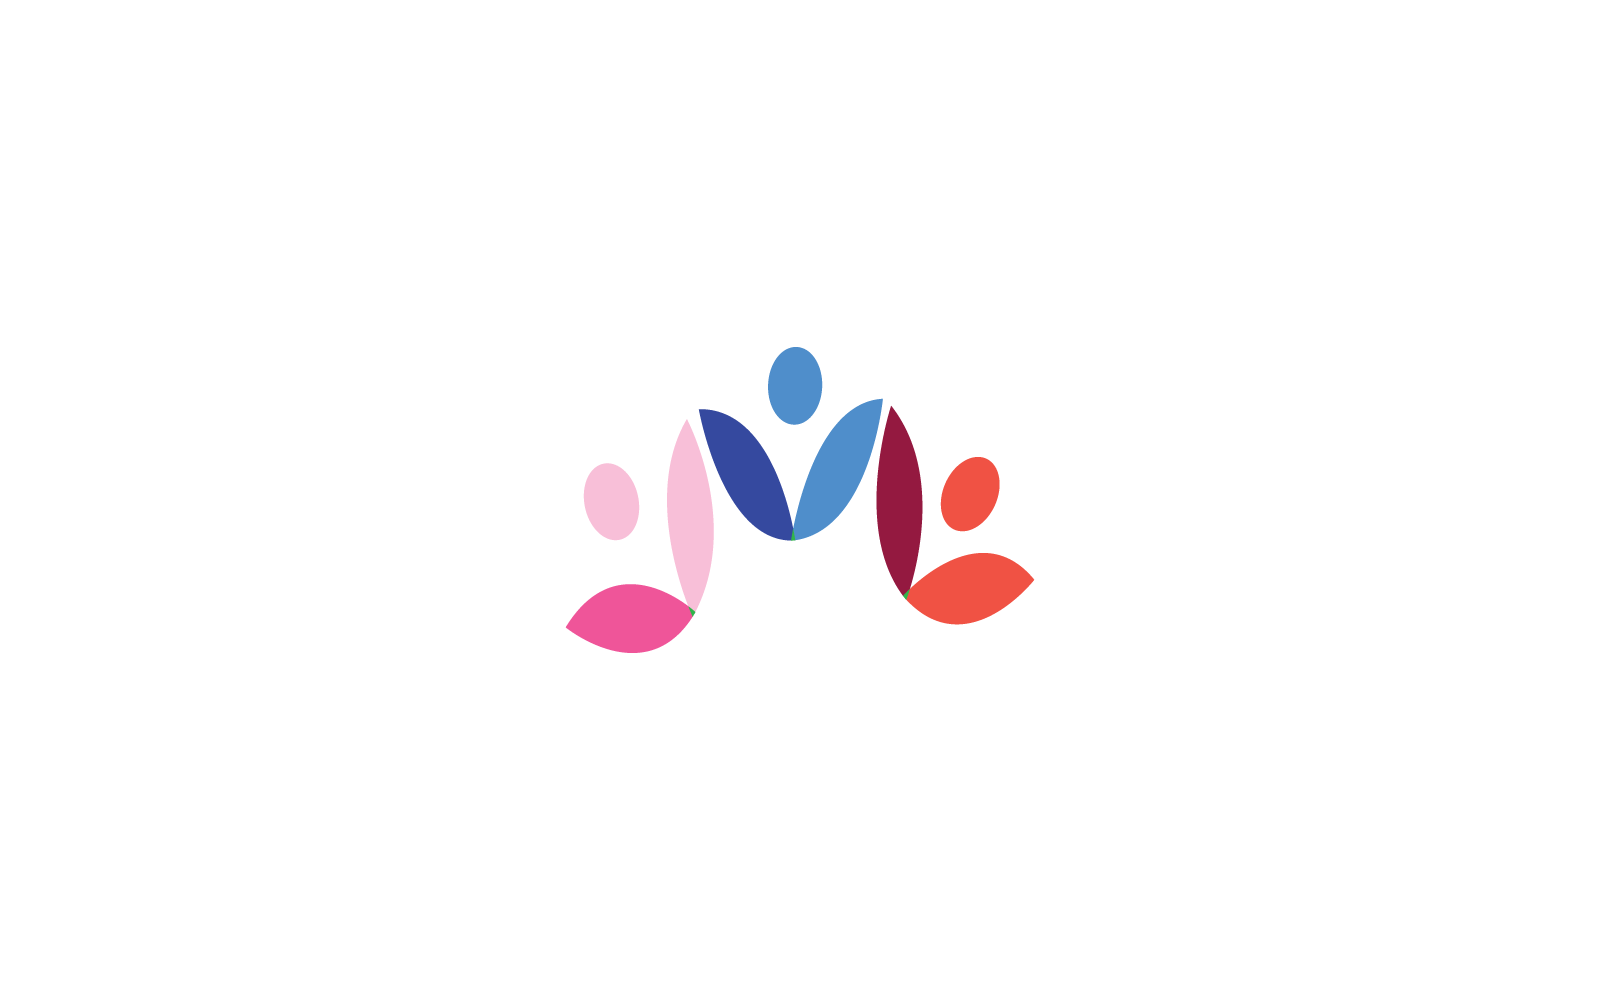 Diseño plano de plantilla de ilustración de logotipo de atención comunitaria